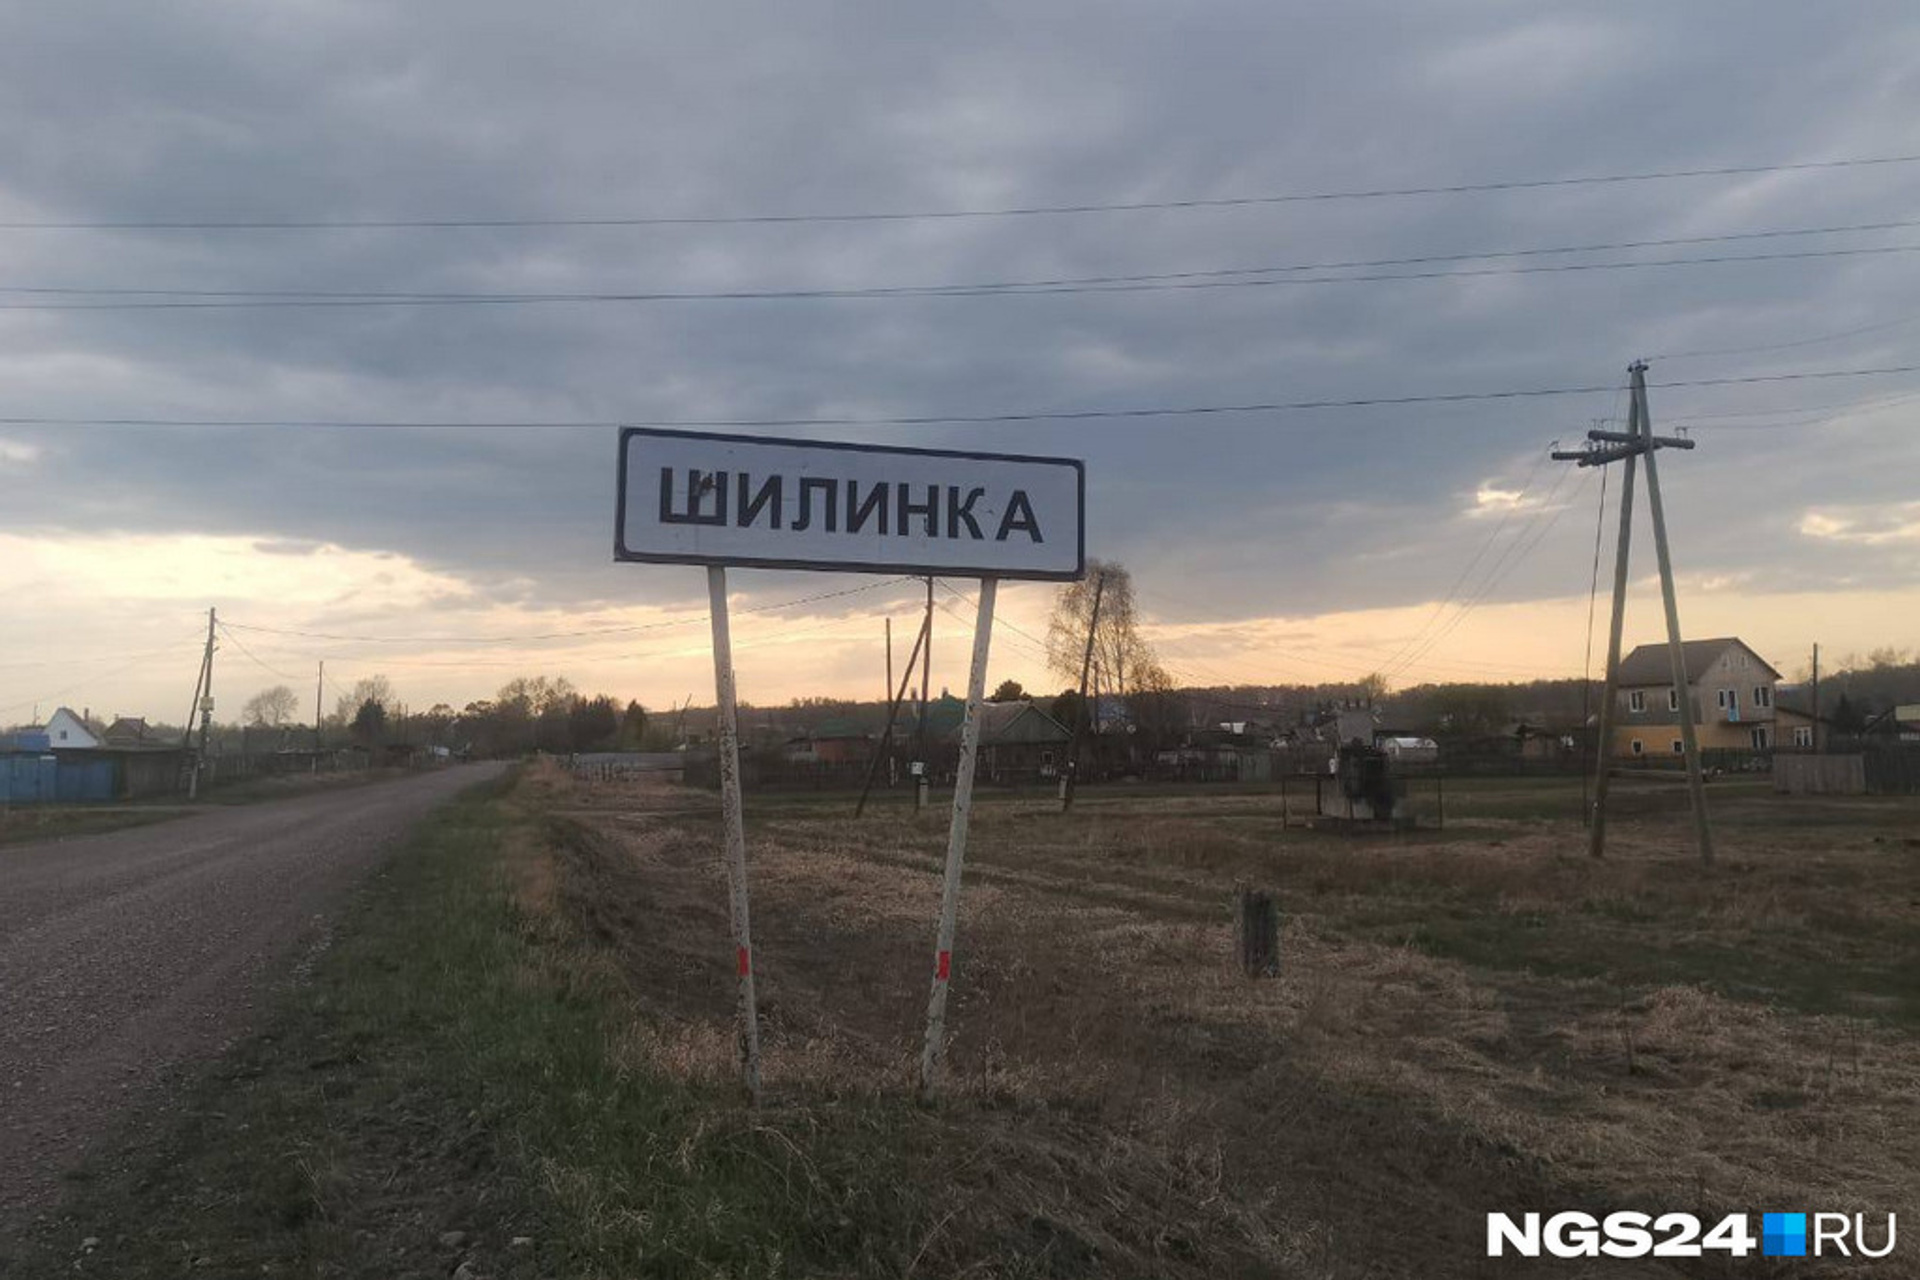 Из Красноярска вернули автобус до Шилинки. Из-за его отмены жители три года ходили до поселка пешком